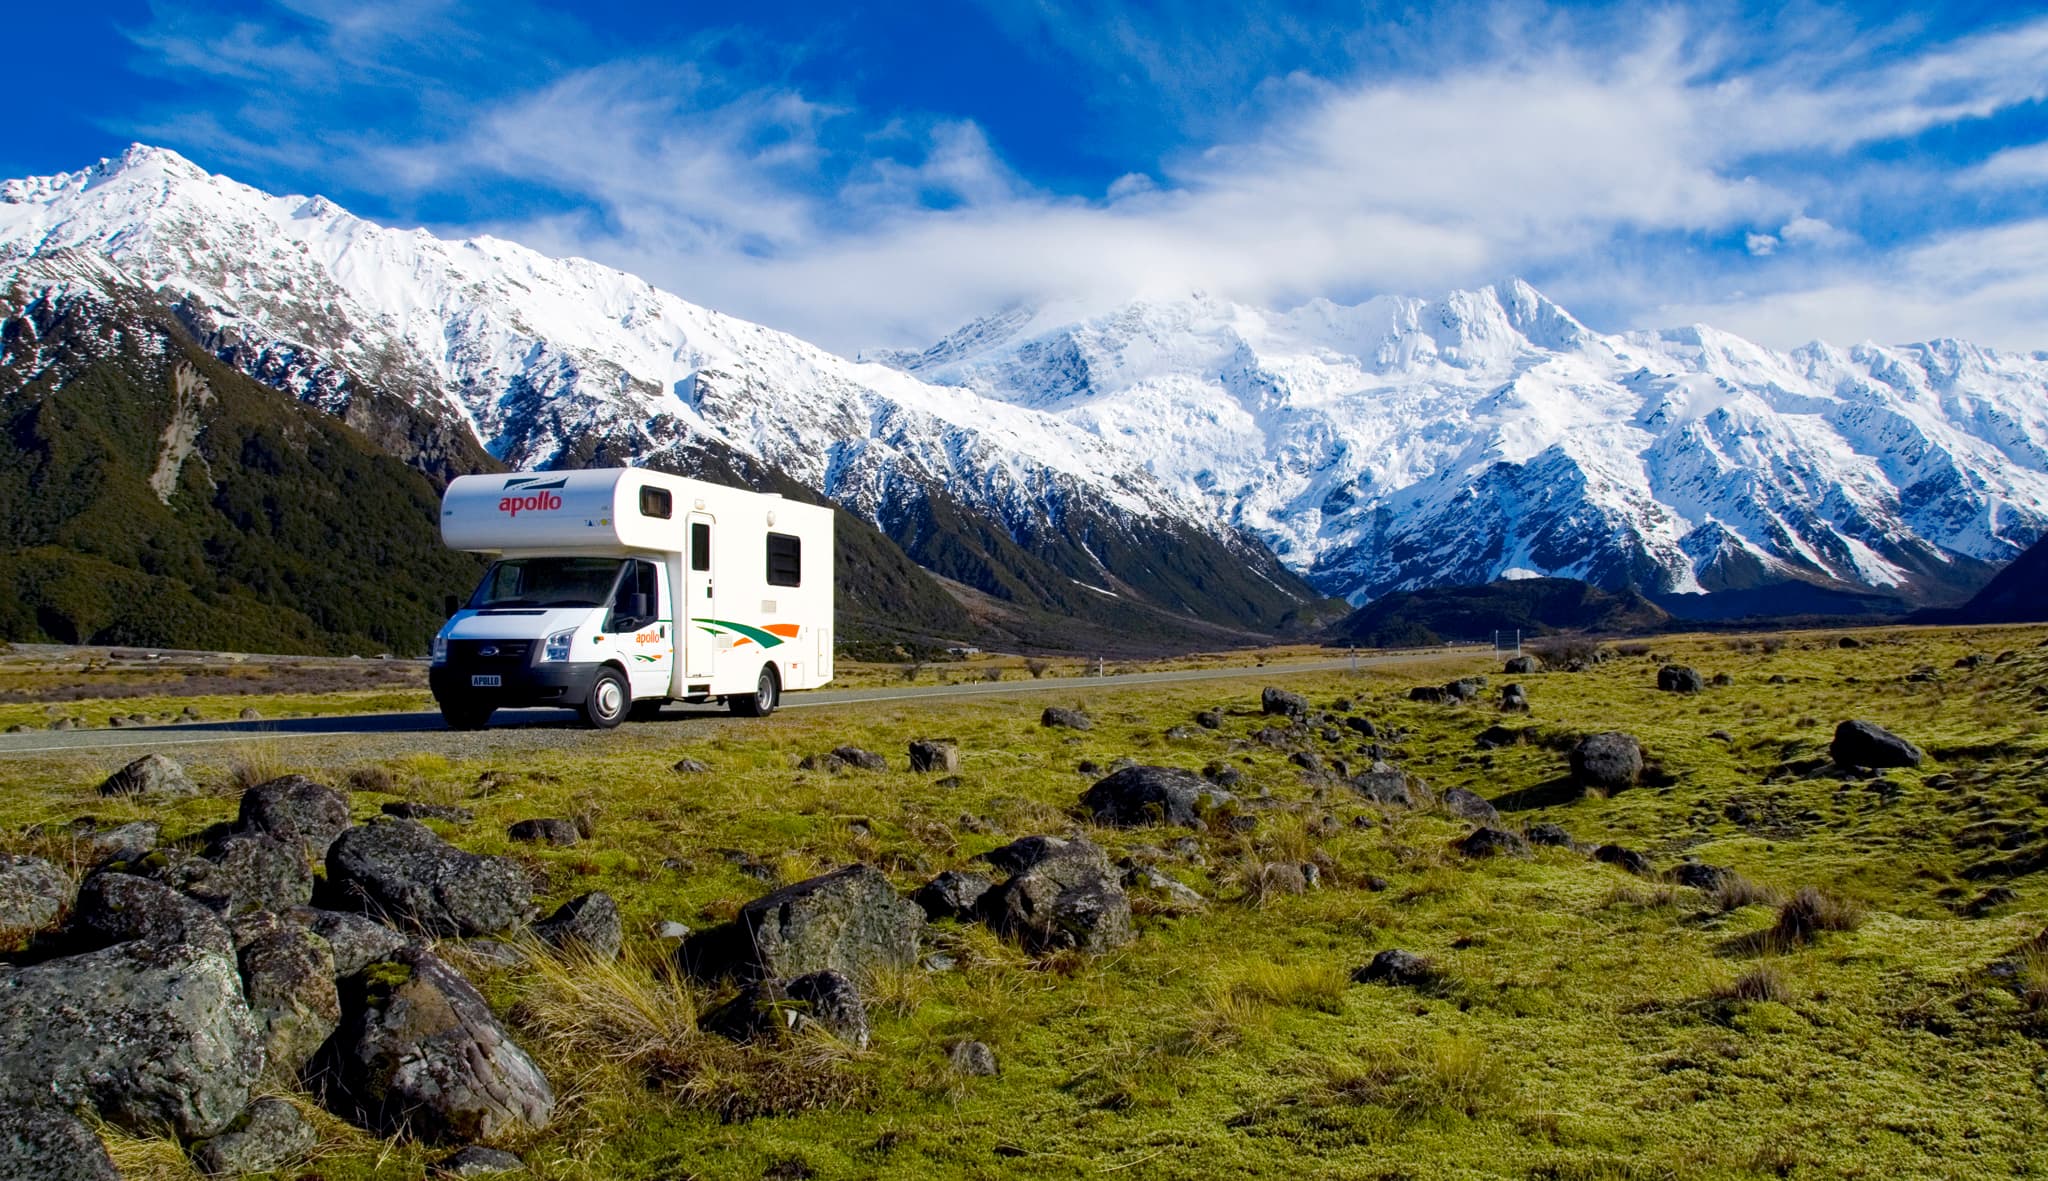 Apollo camper voor besneeuwde bergen in NZ